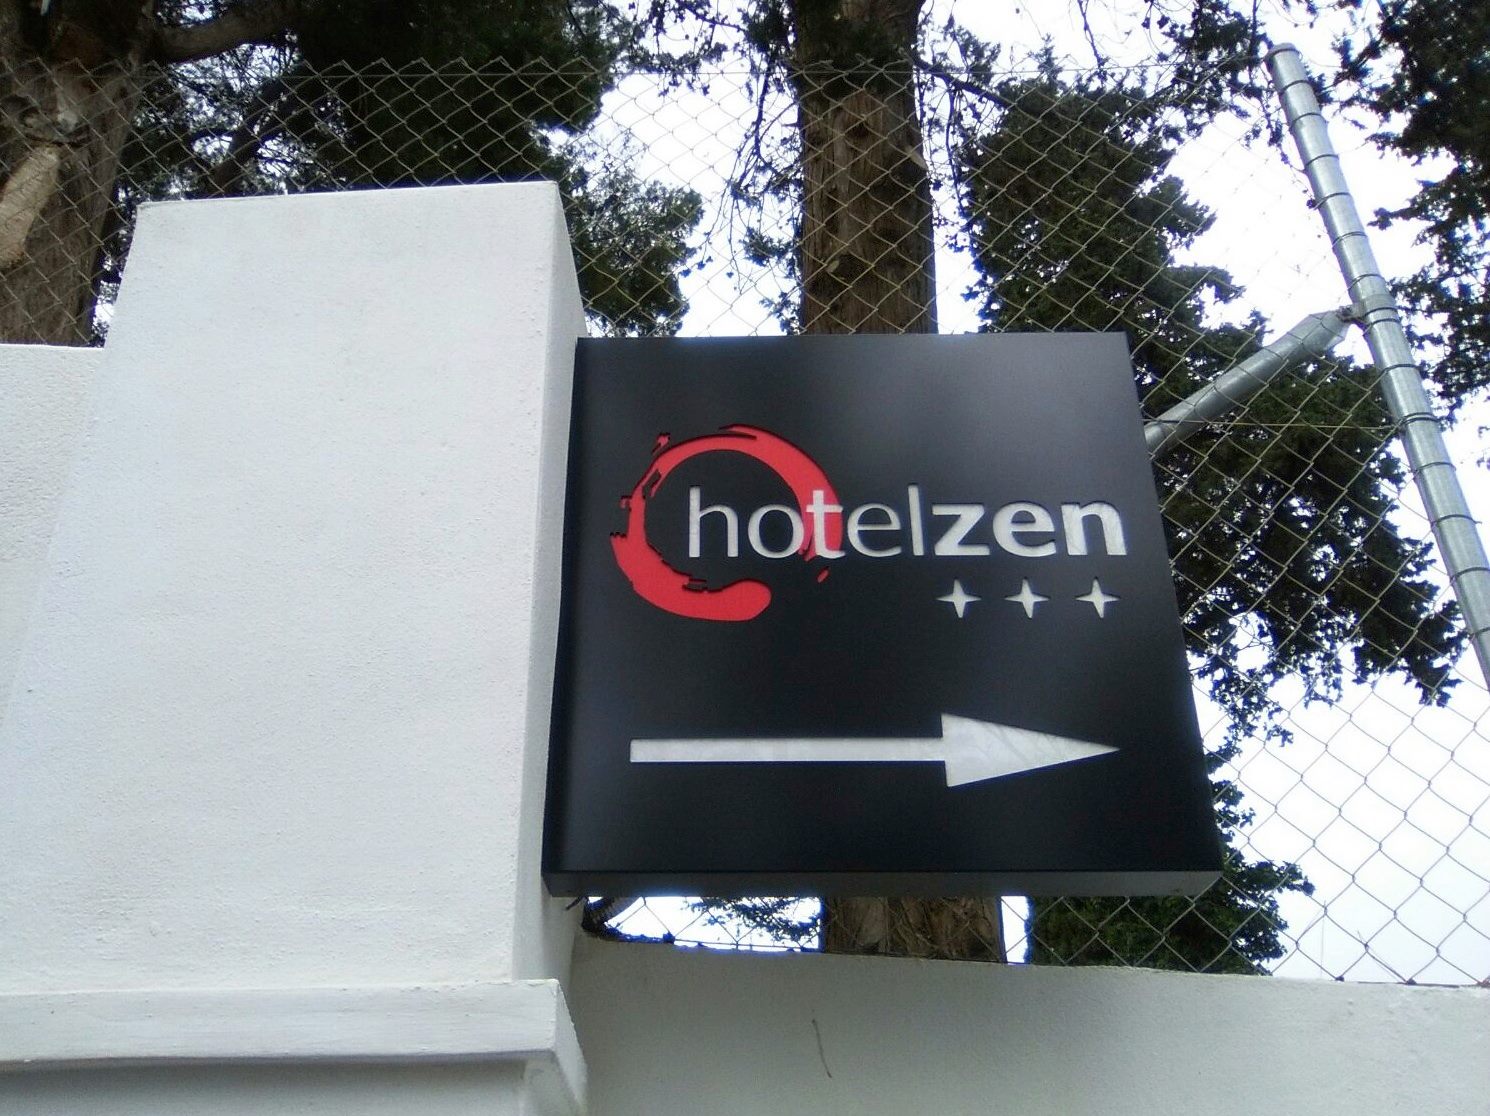 banderola hotel zen